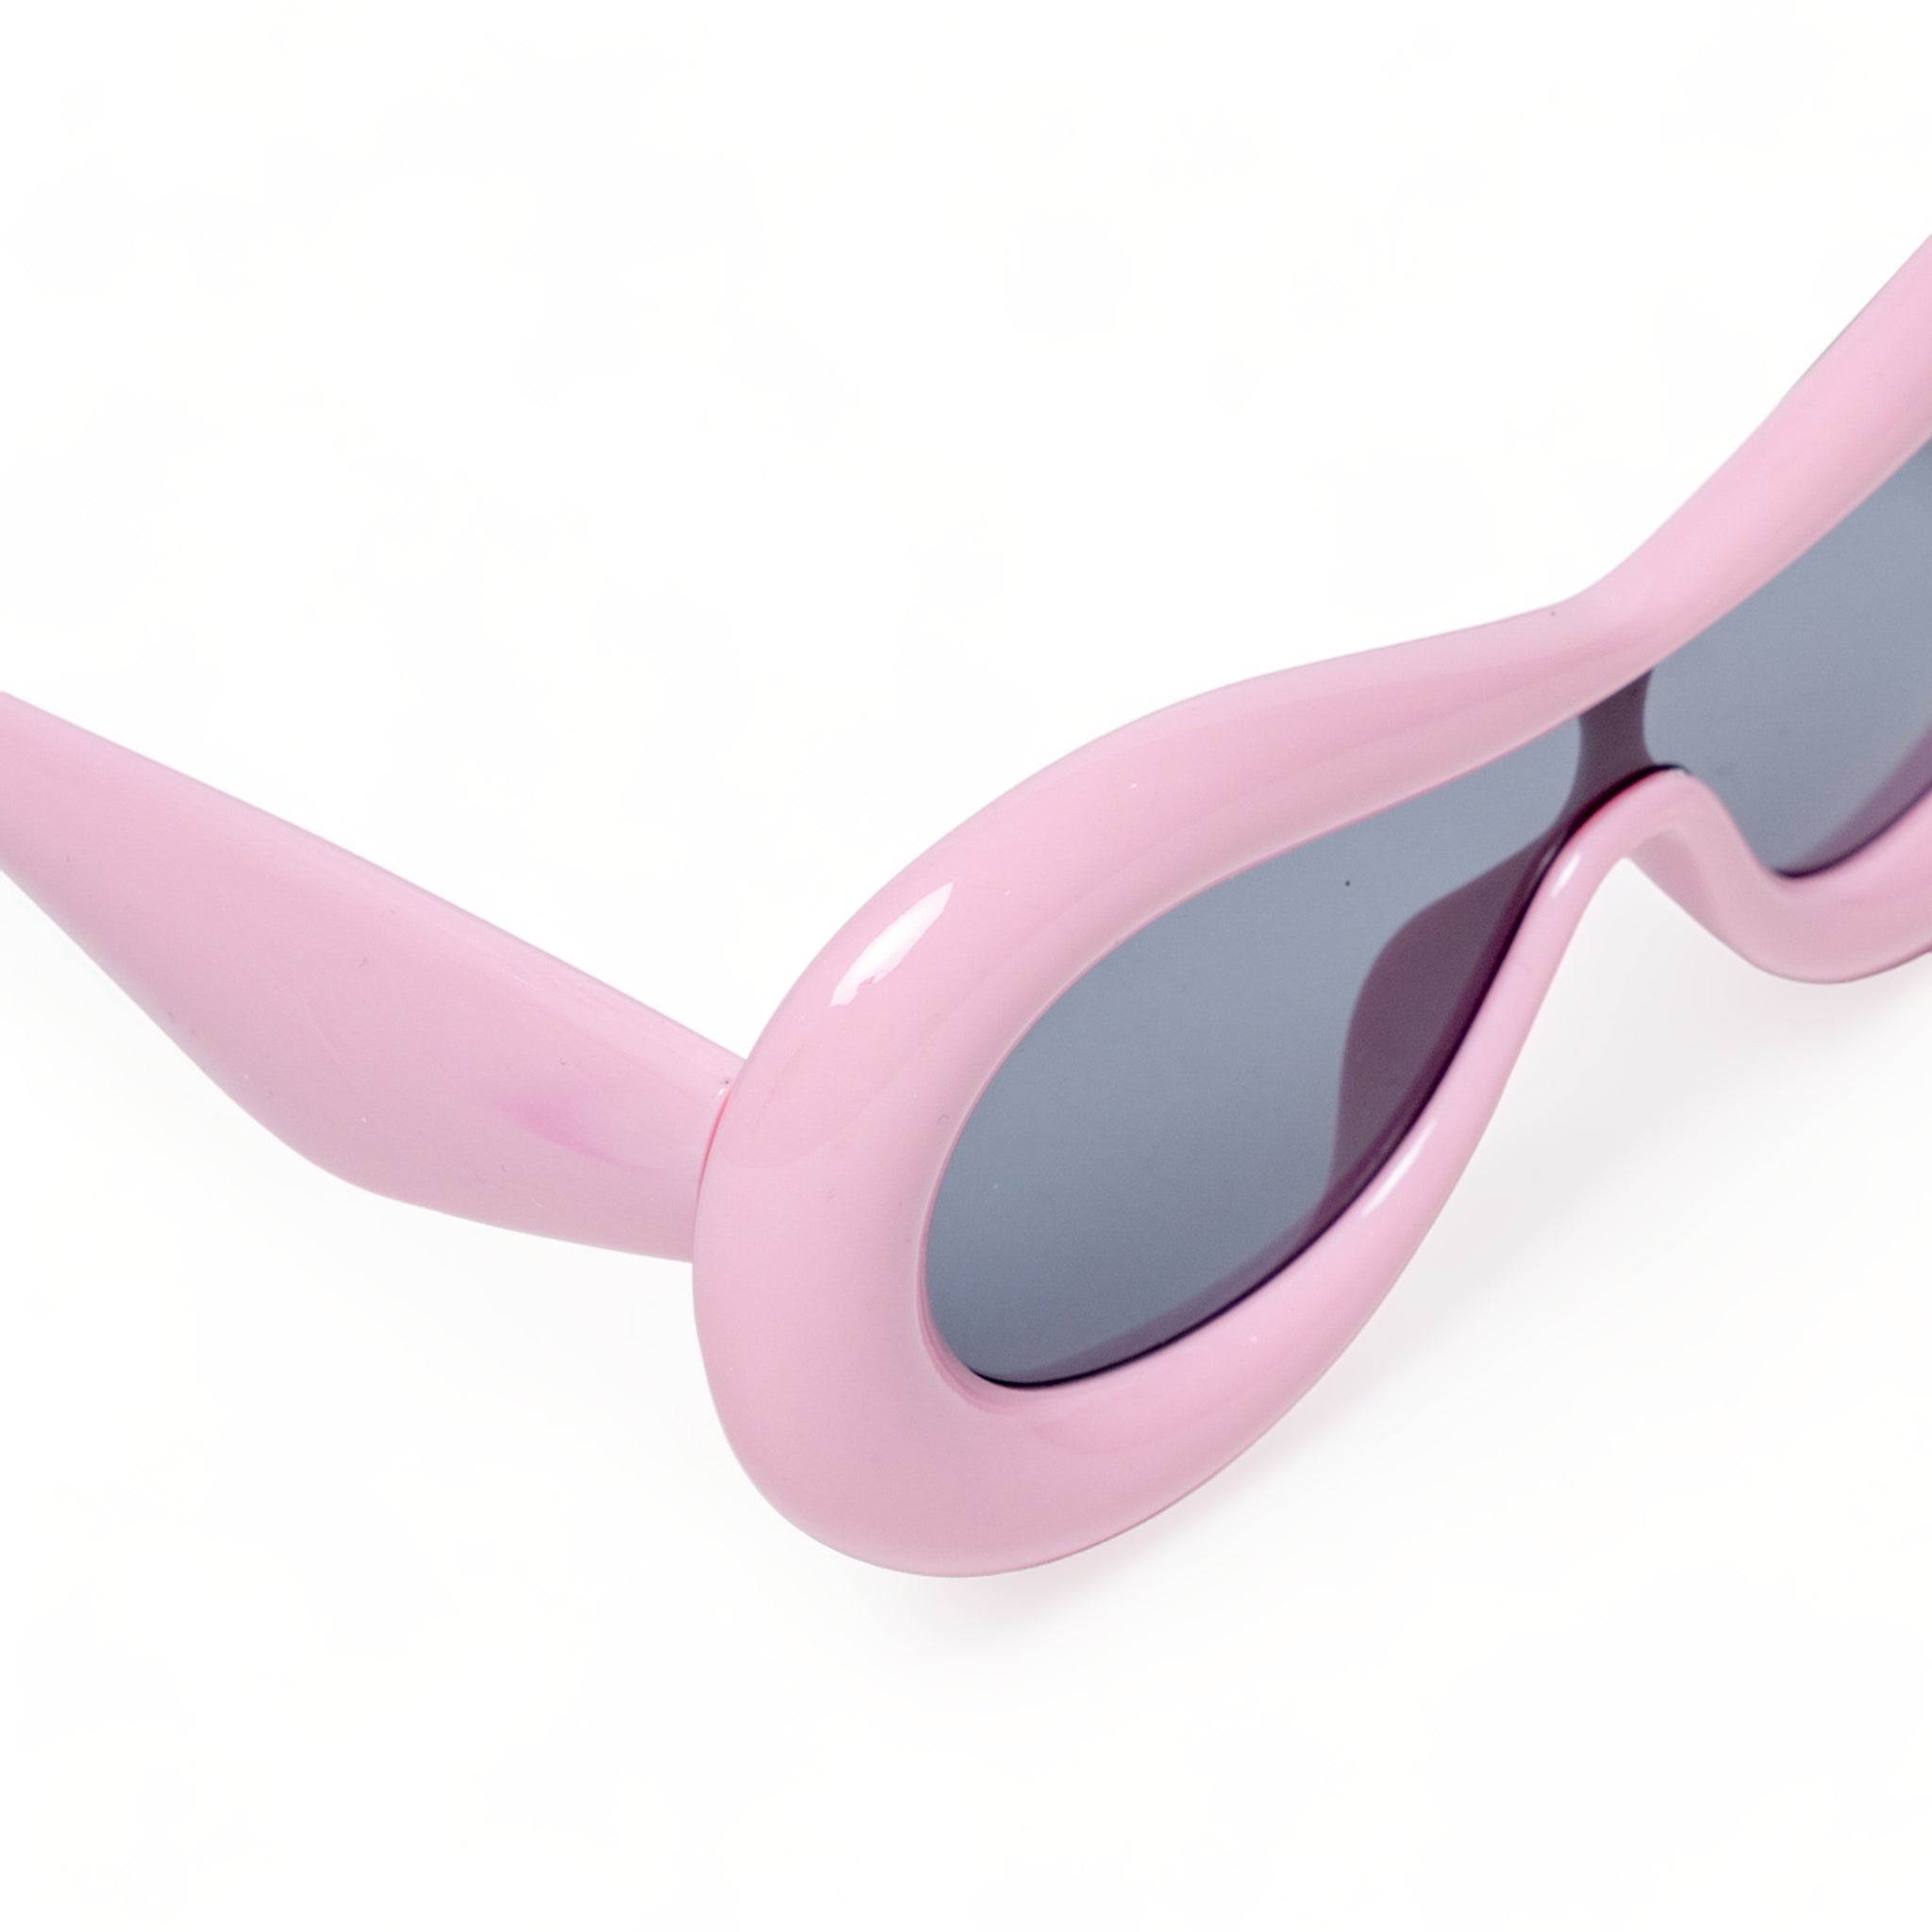 Chokore Oversized Bubble Sunglasses (Pink)